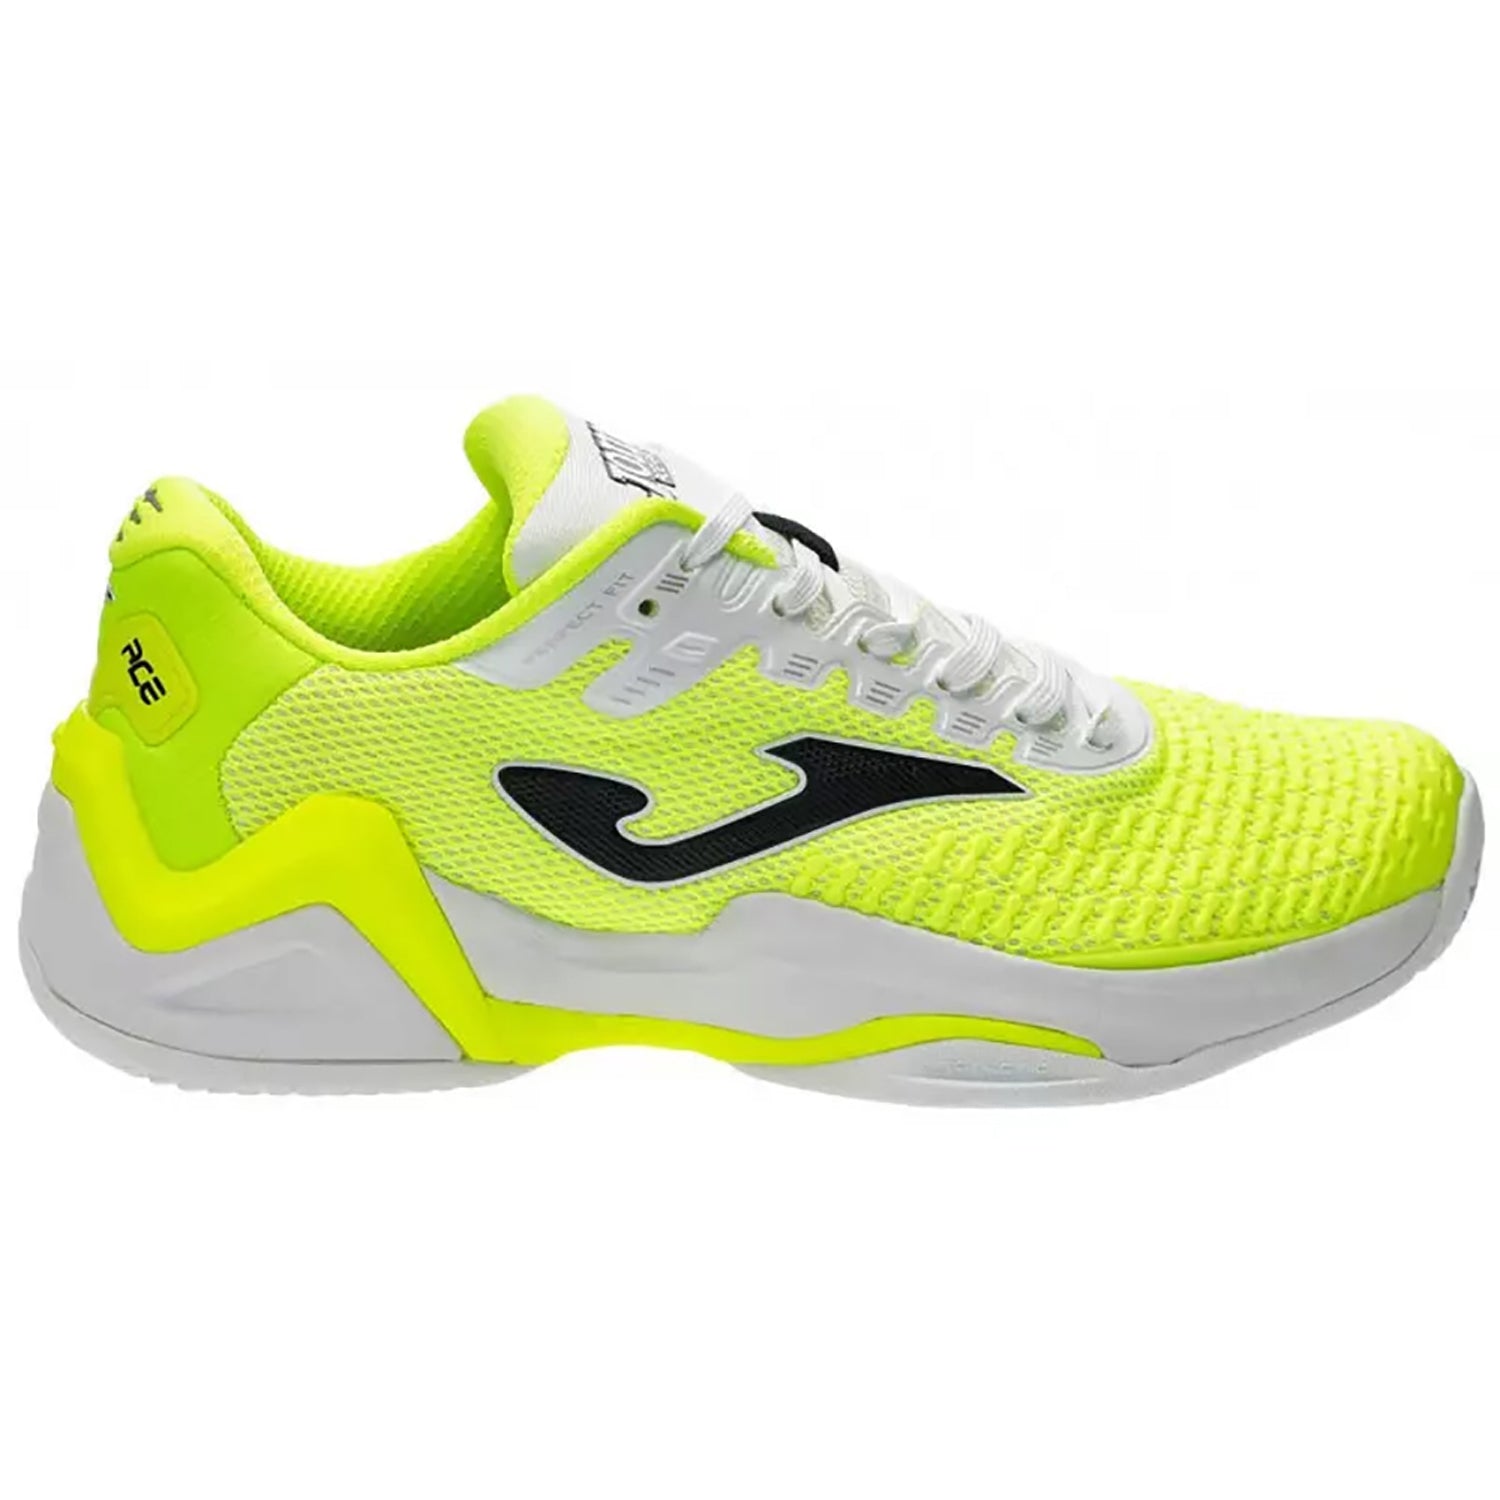 Joma Ace Pro Men 2109 Tennis Shoe , Lemon Flour White - Best Price online Prokicksports.com